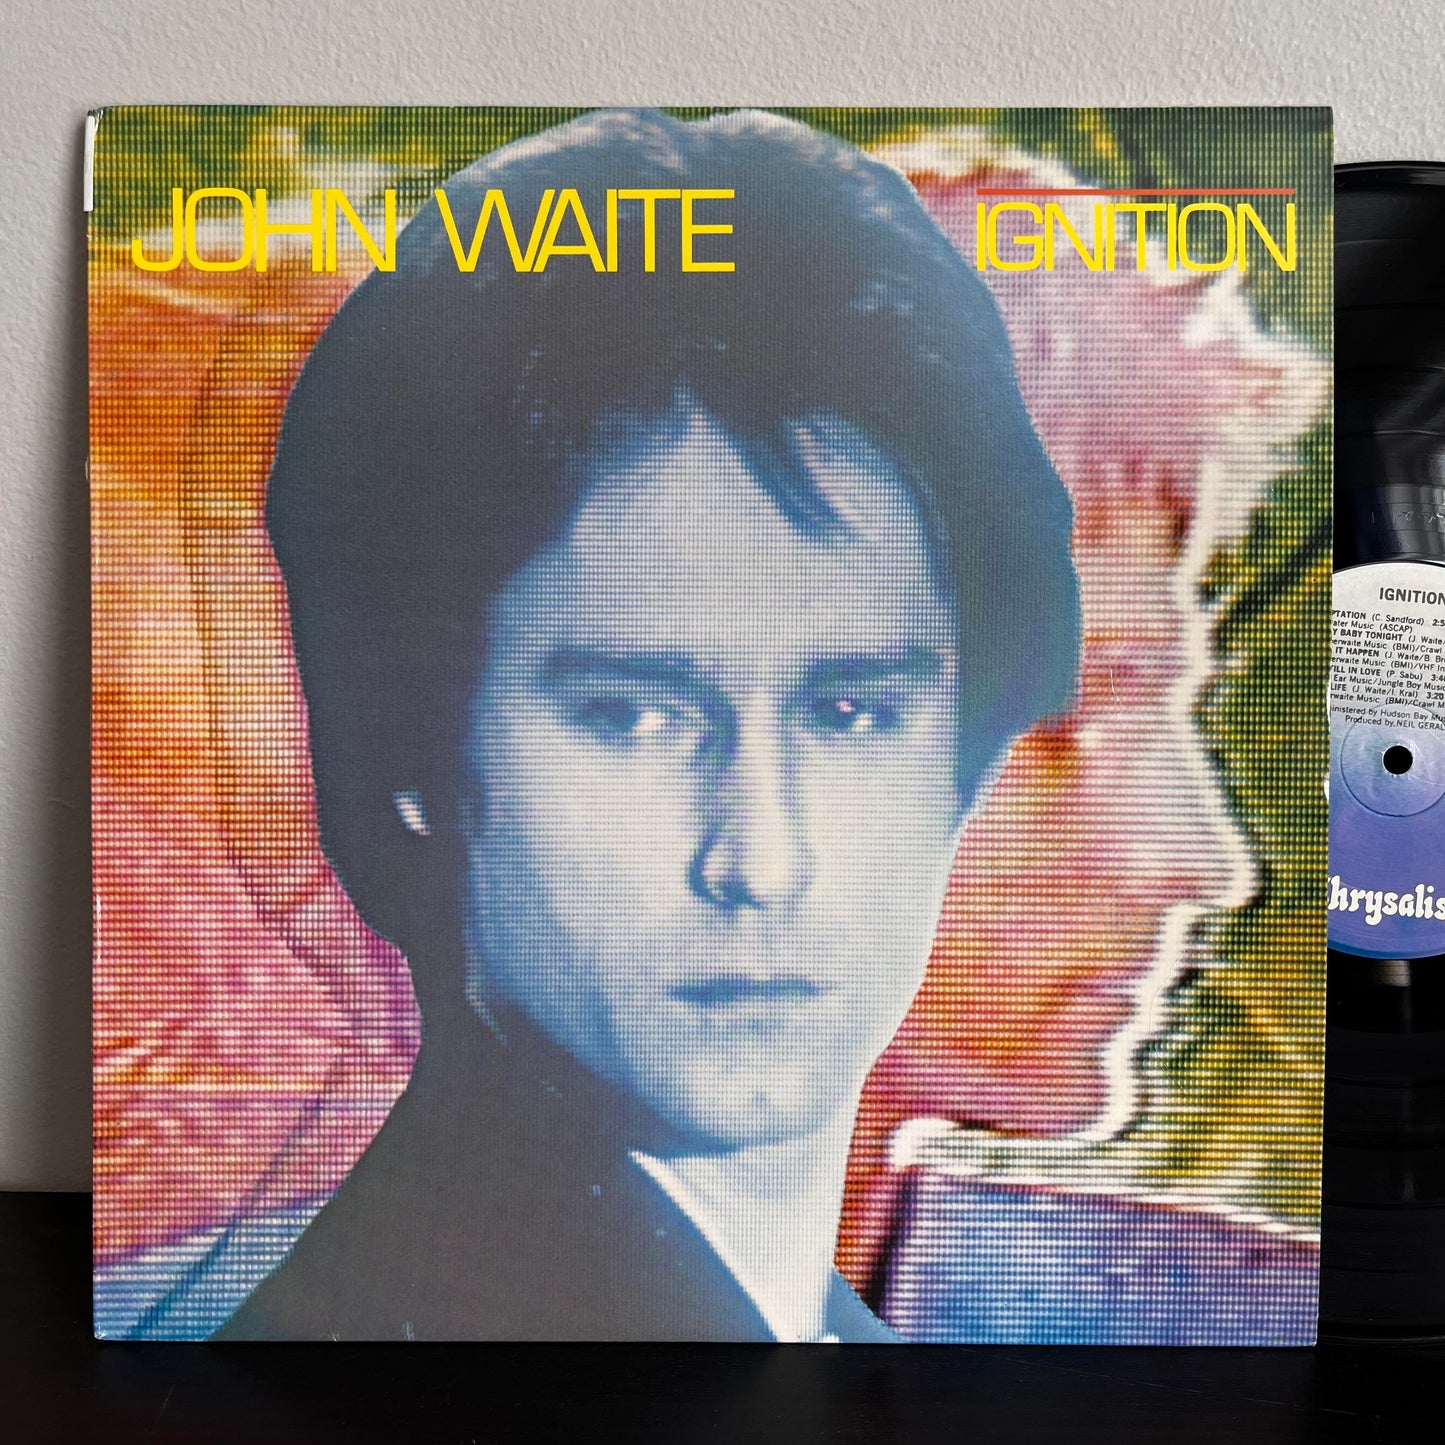 Ignition - John Waite FV 41376 Vinyl VG+